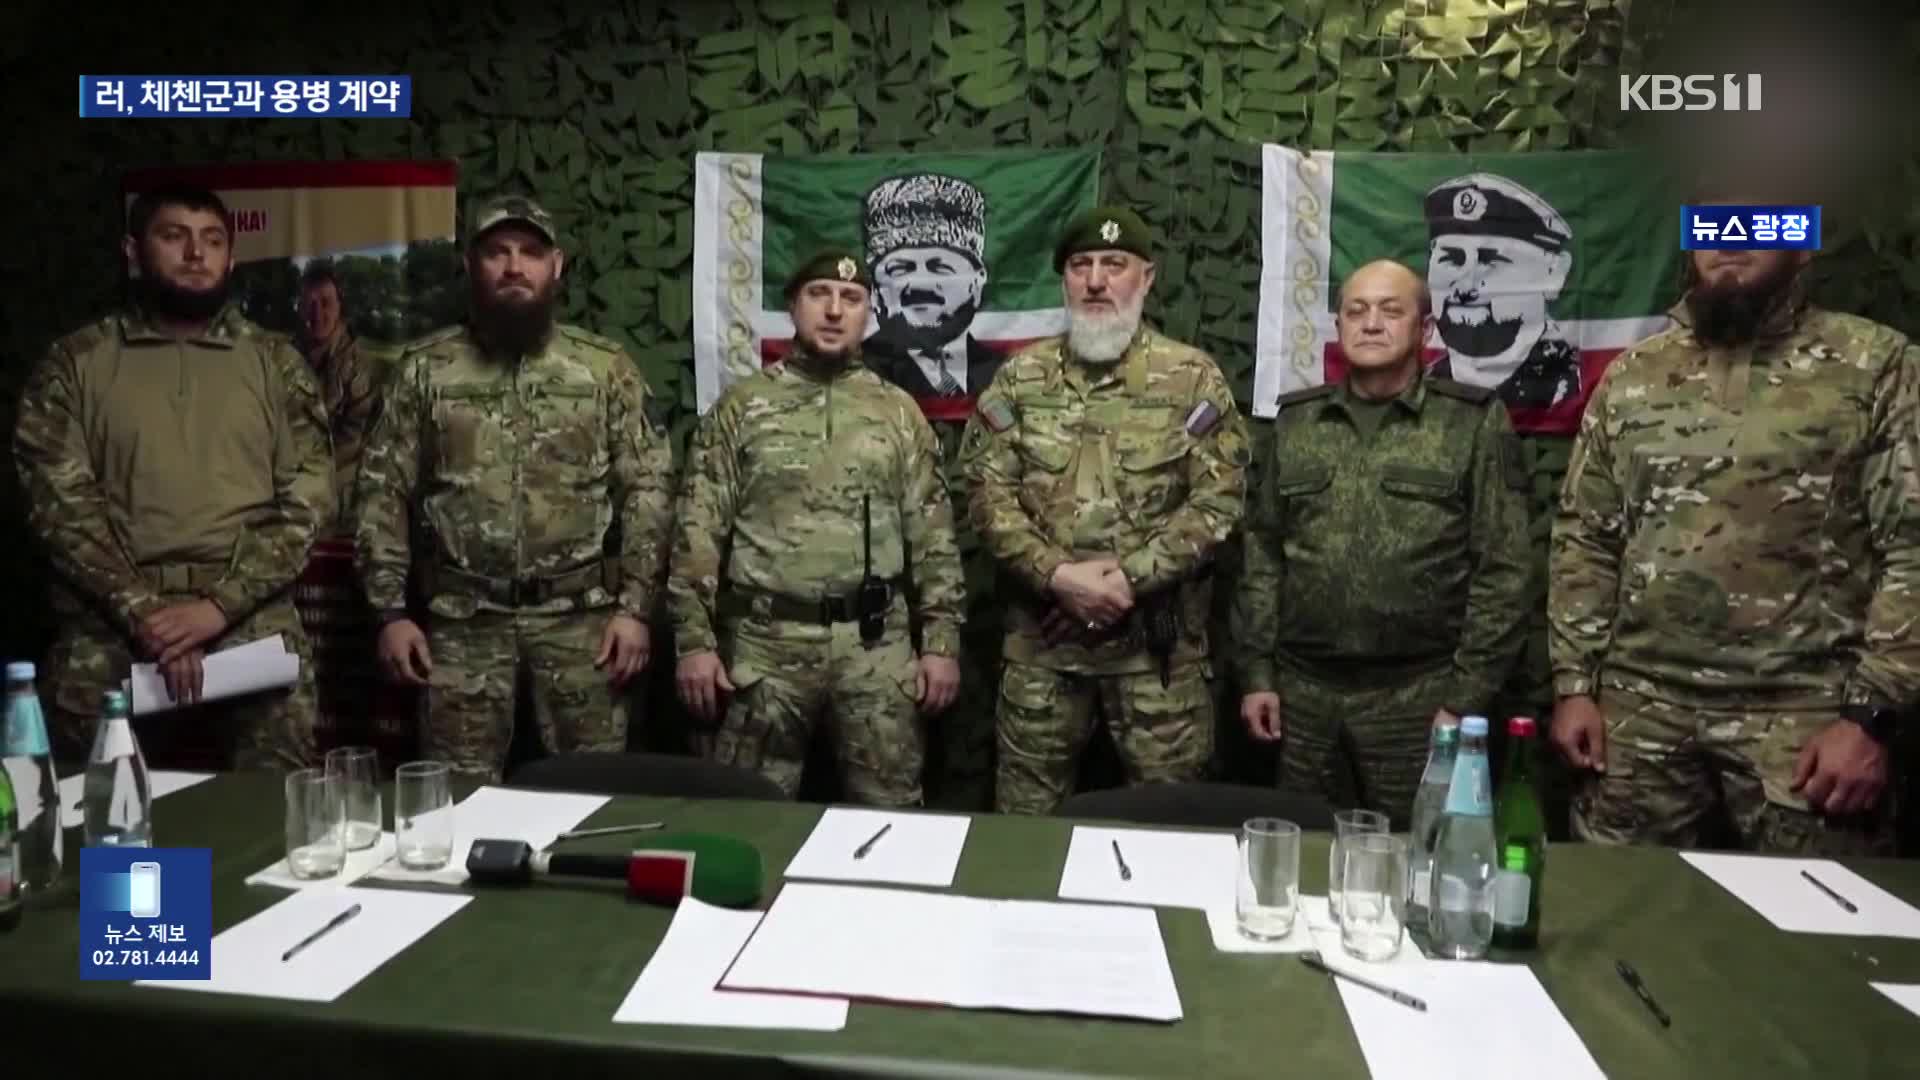 바그너 가고 체첸 특수부대…러, 체첸군과 정식 계약